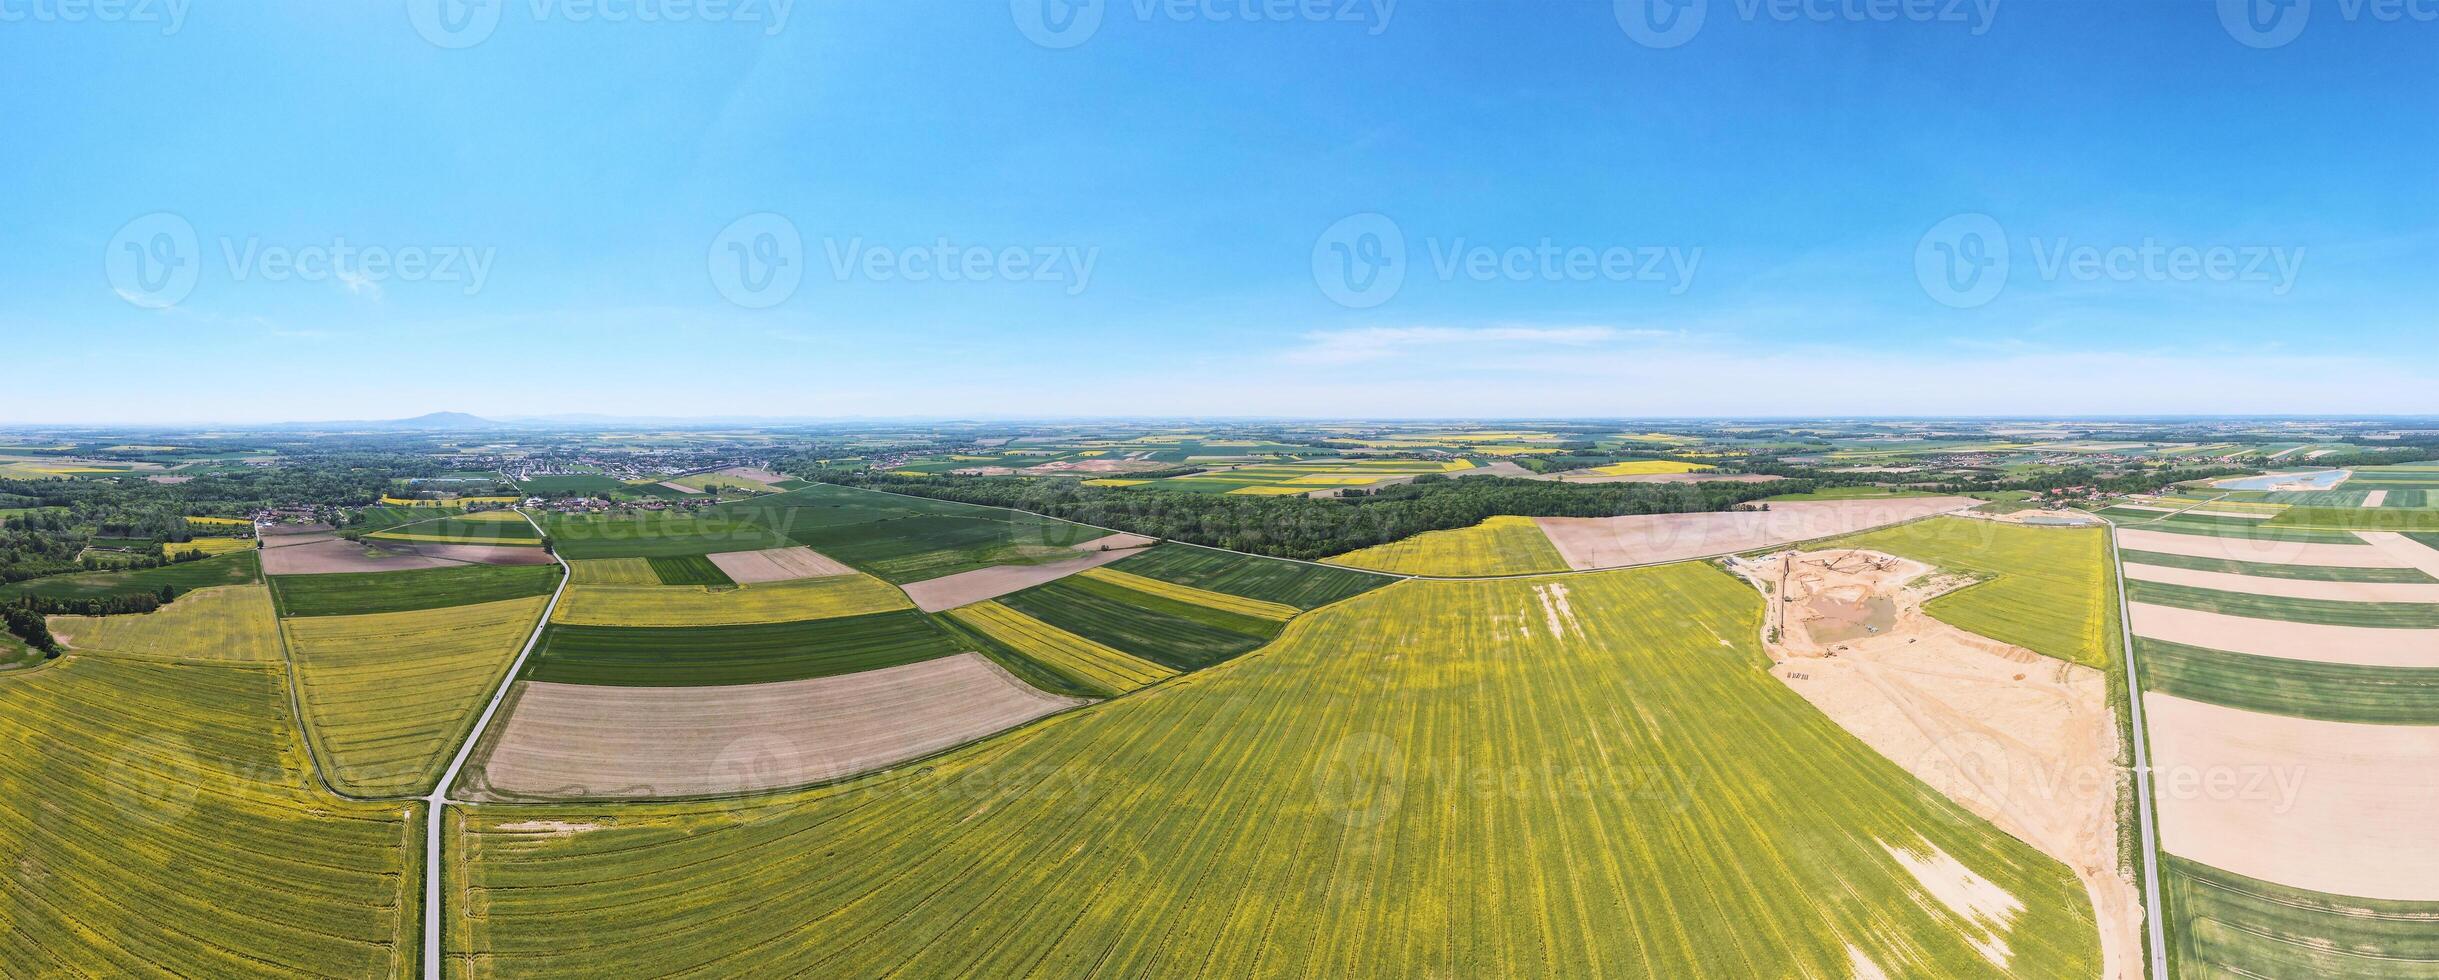 antenn se av landsbygden med jordbruks fält foto